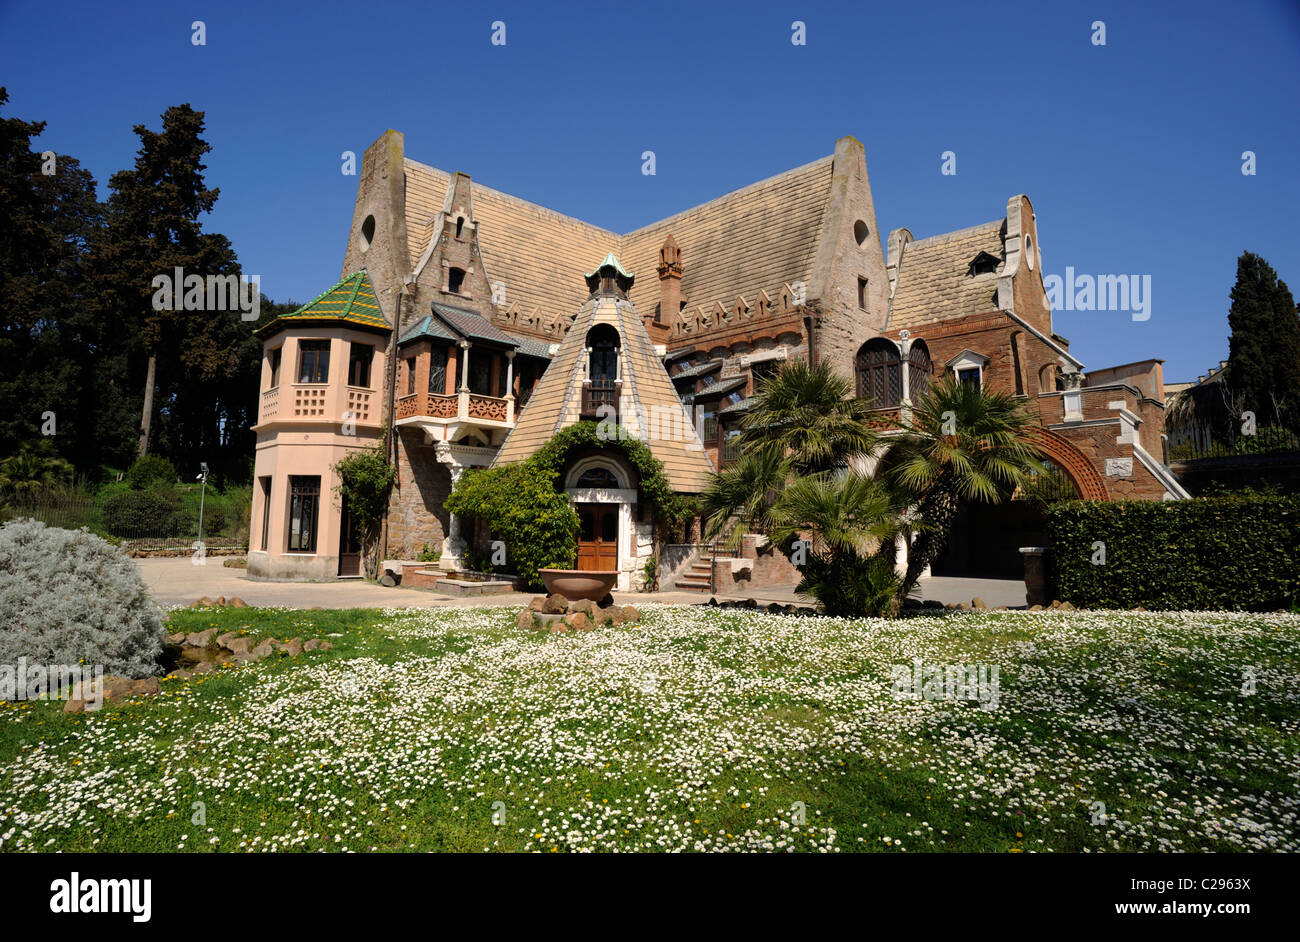 italy, rome, villa torlonia, casa delle civette, liberty style art nouveau building Stock Photo